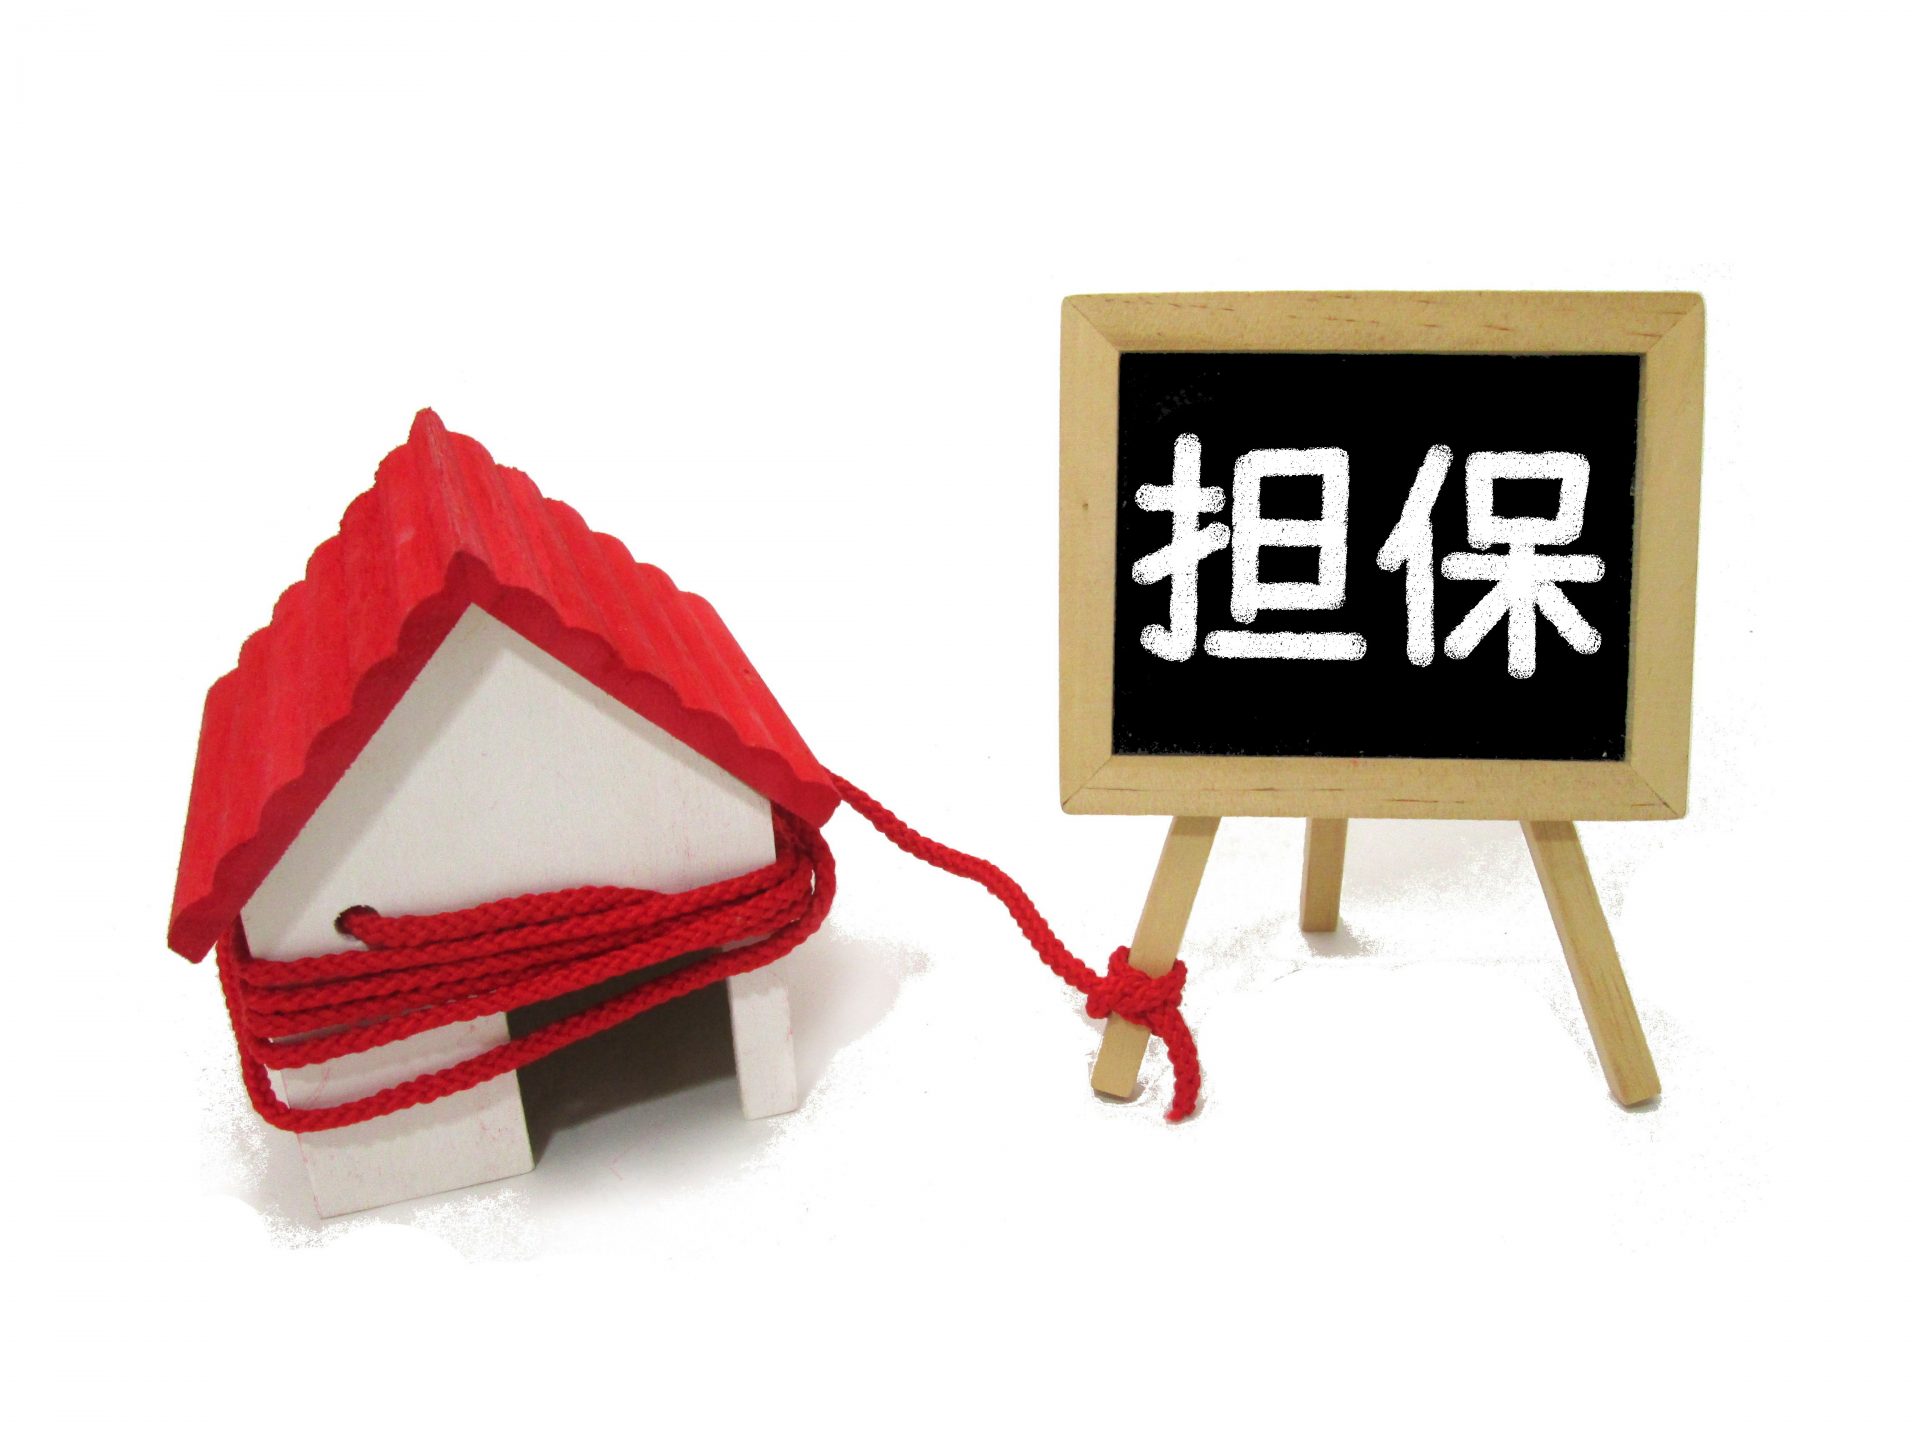 赤い屋根の家の模型に赤い縄がぐるぐる巻きにされ、その縄が「担保」と書かれた黒板のイーゼルの脚につながれている